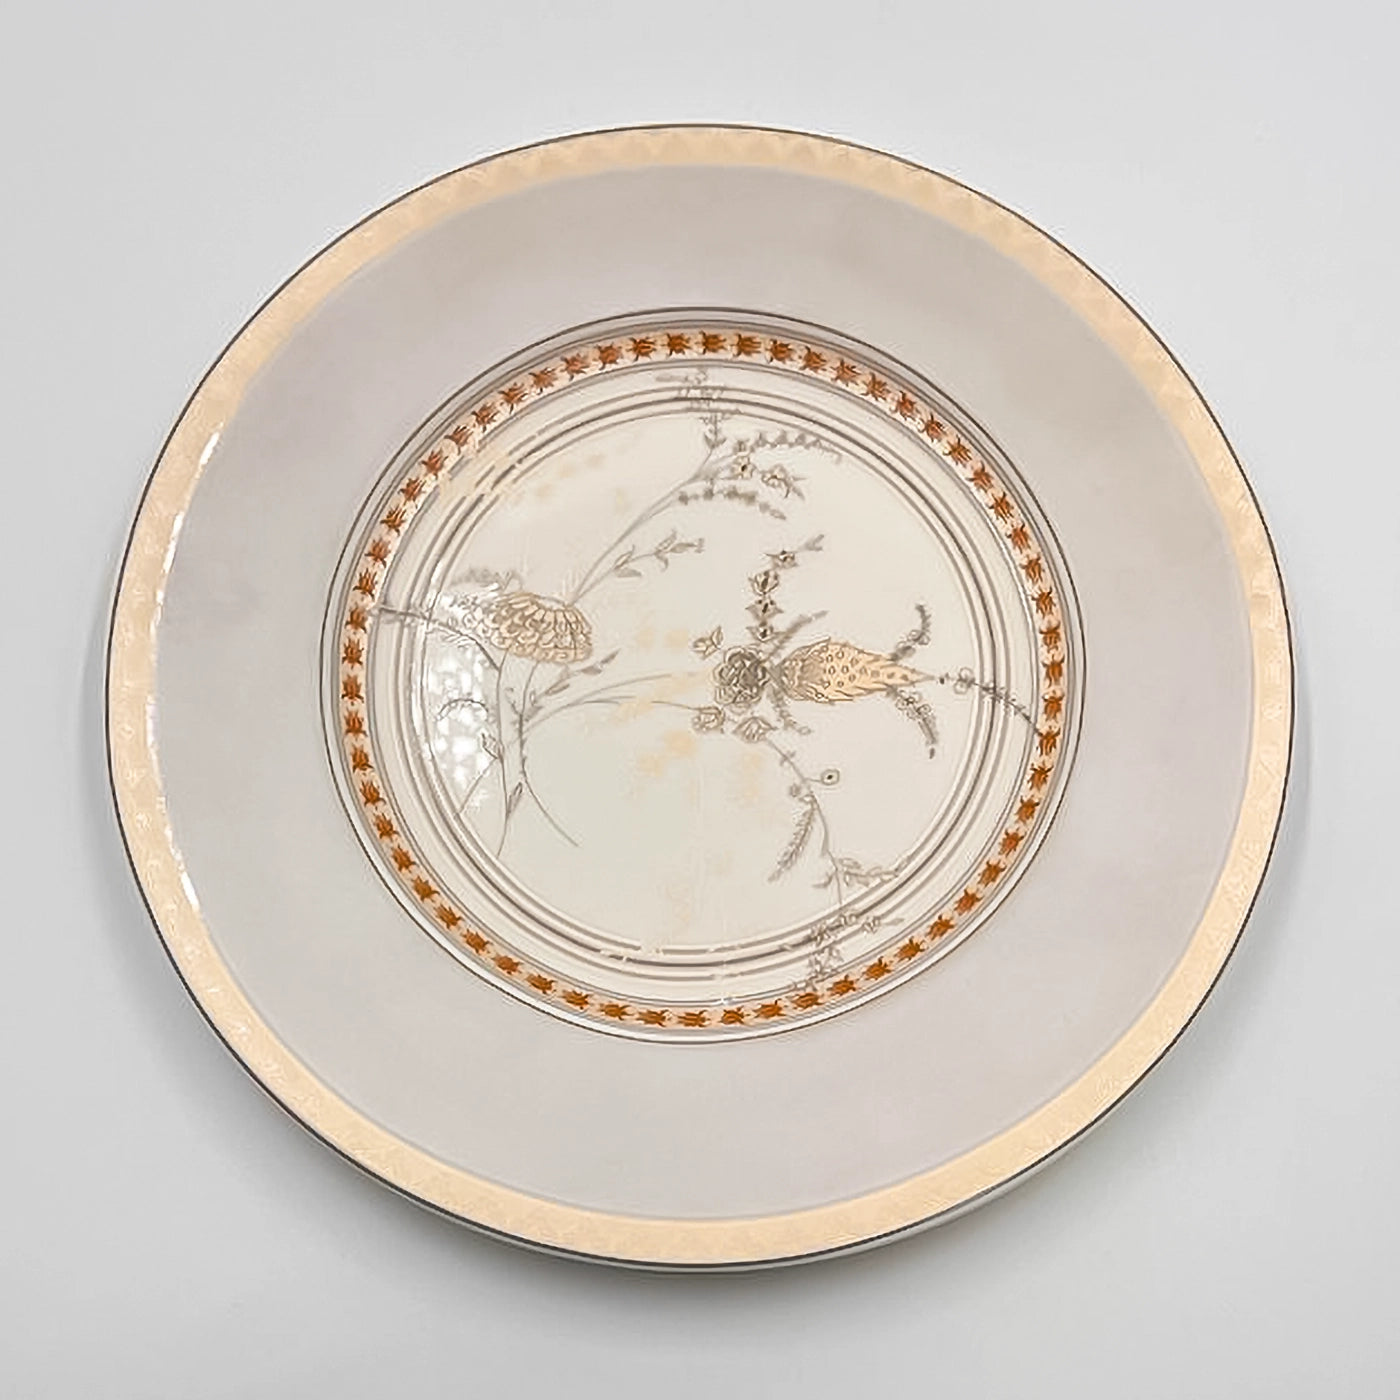 Tendenze -Melzi Servizio di piatti tavola 18 pezzi in porcellana